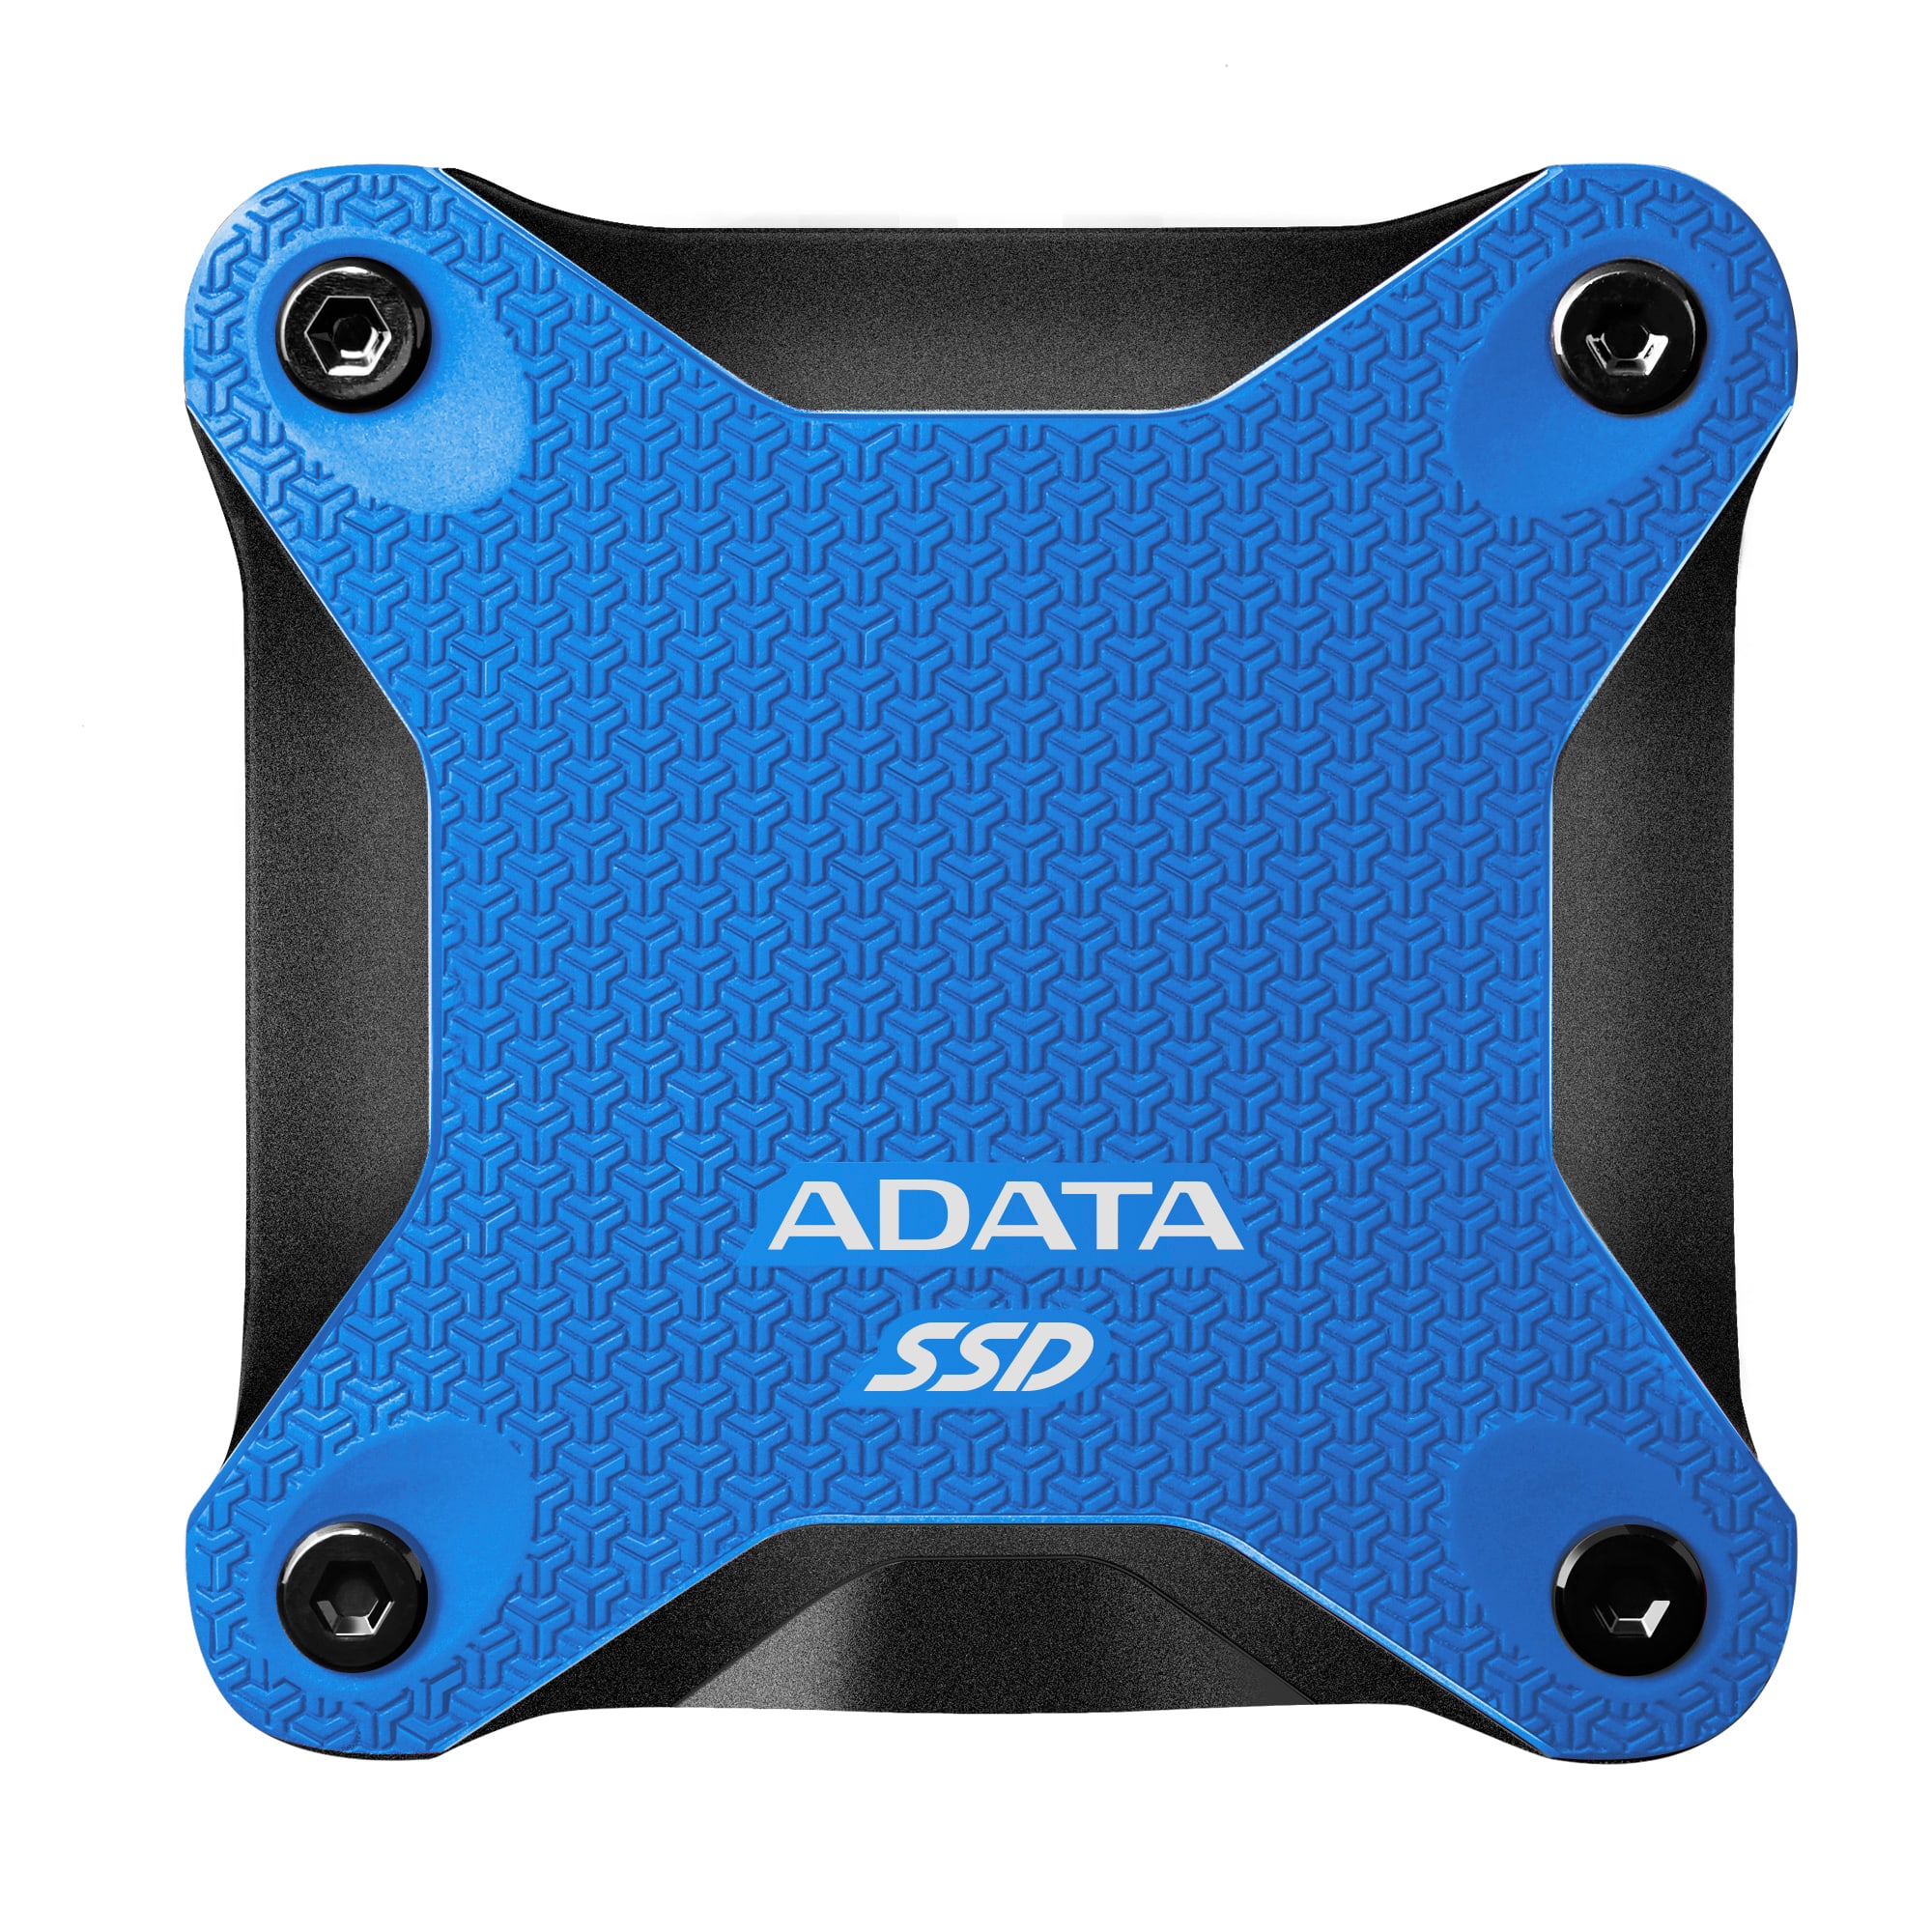 ADATA externí SSD SD600Q 480GB red